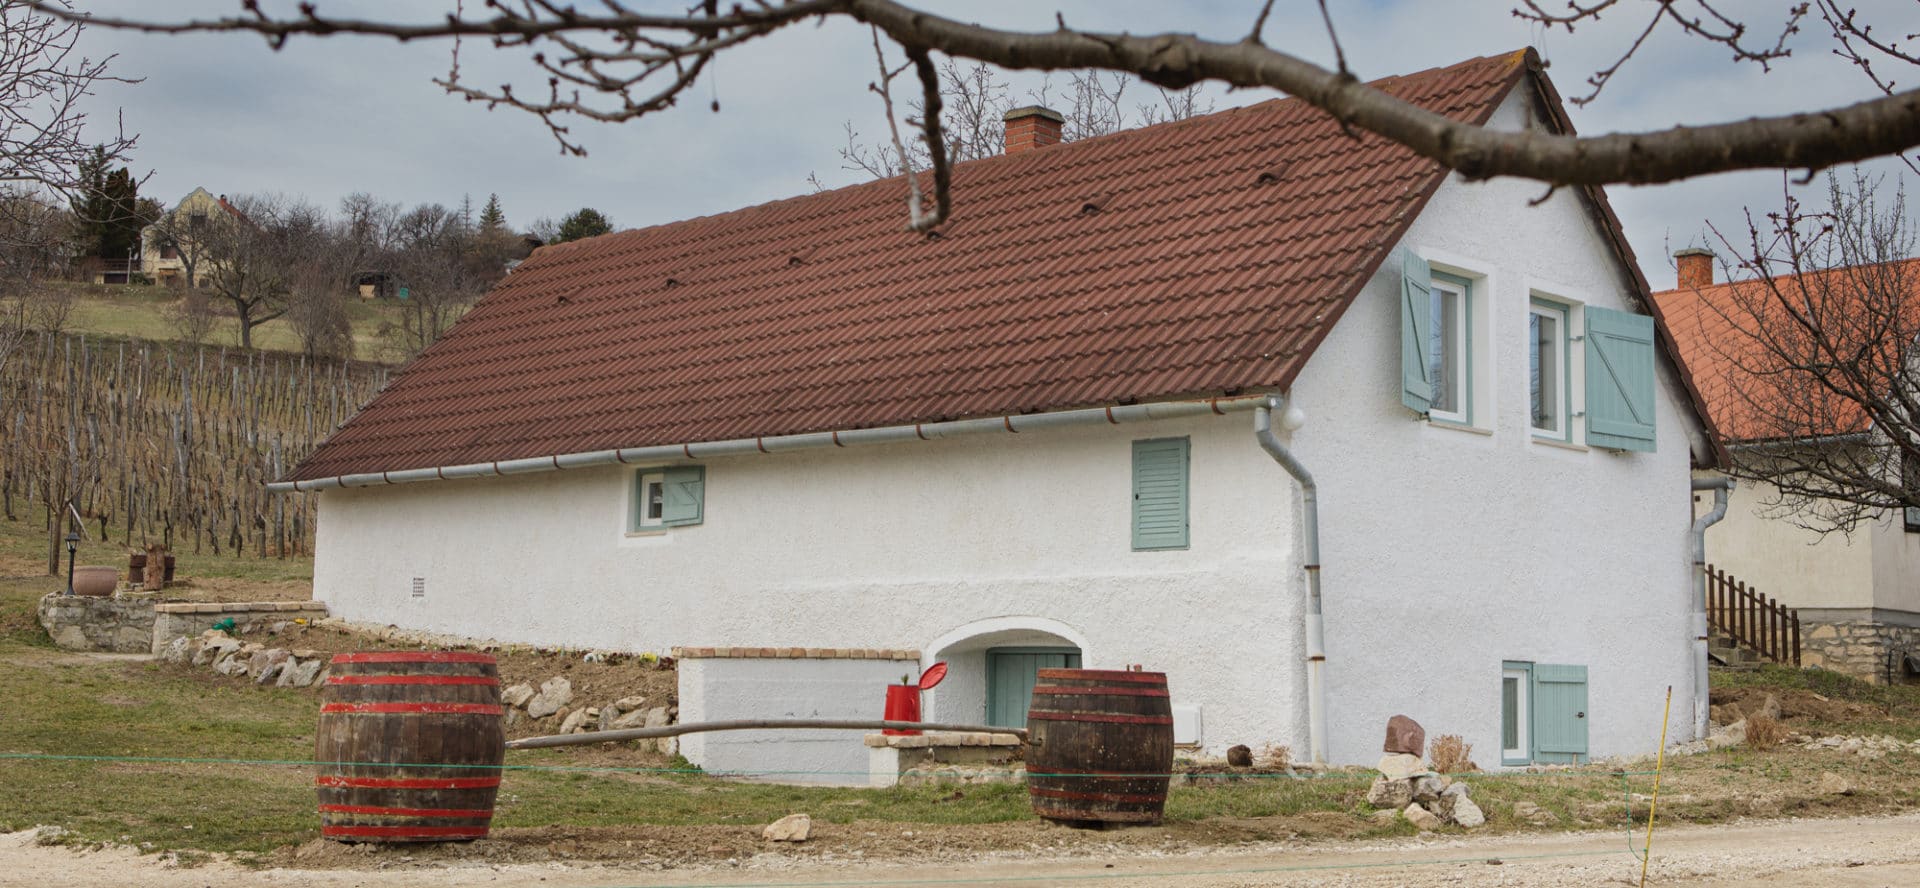 Présház Pécselyen - hangulatos ékszerdoboz a Balaton-felvidéken